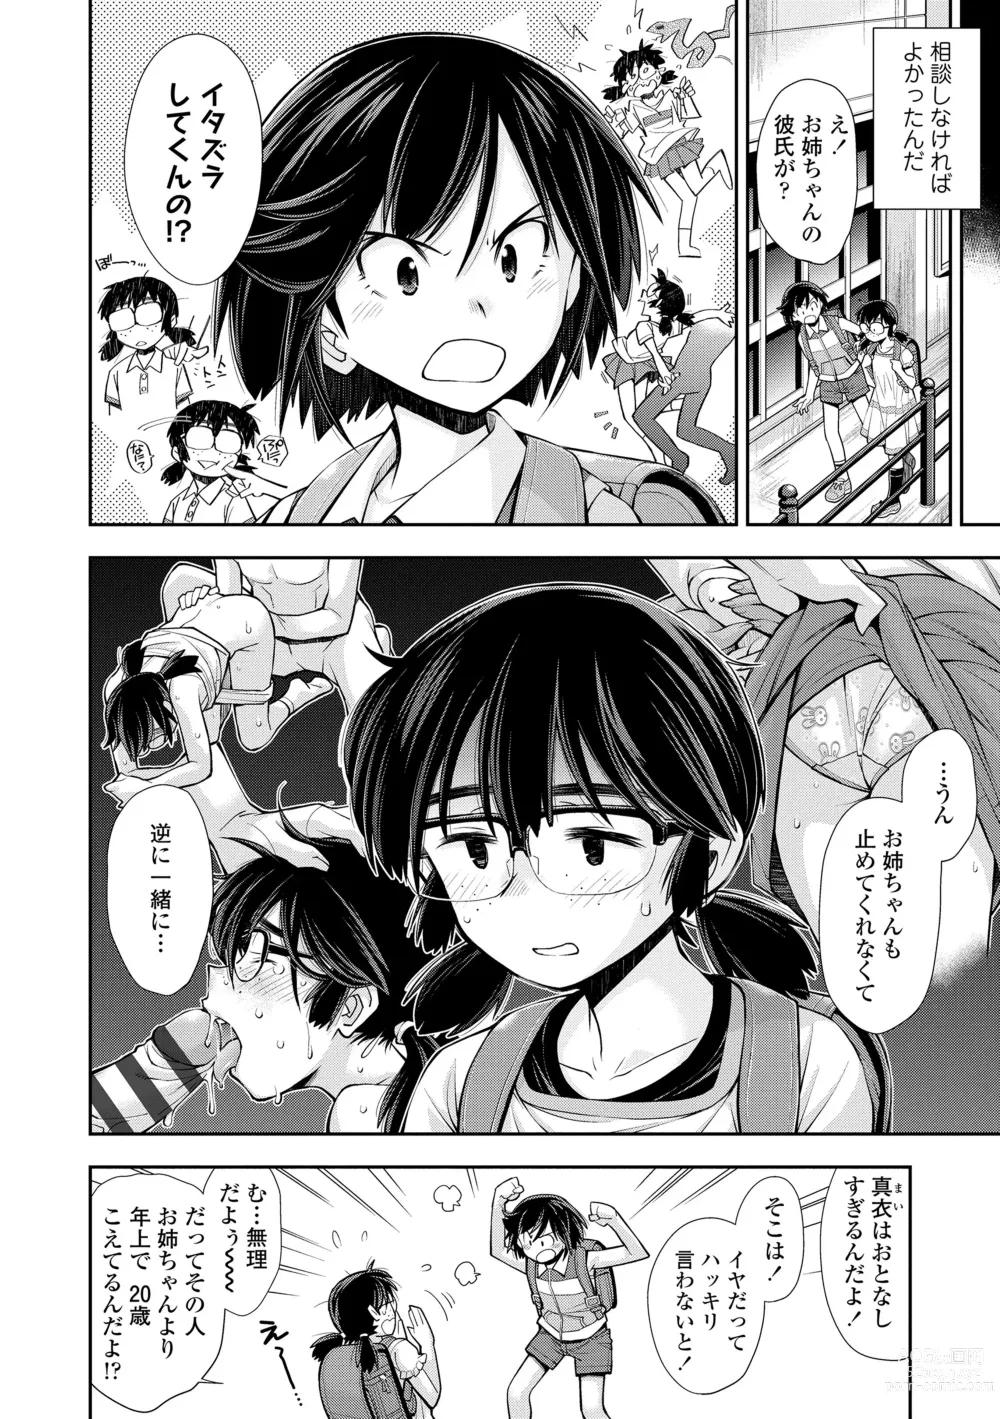 Page 8 of manga Onnanoko wa Sono Yubi no Ugoki ni Yowain desu